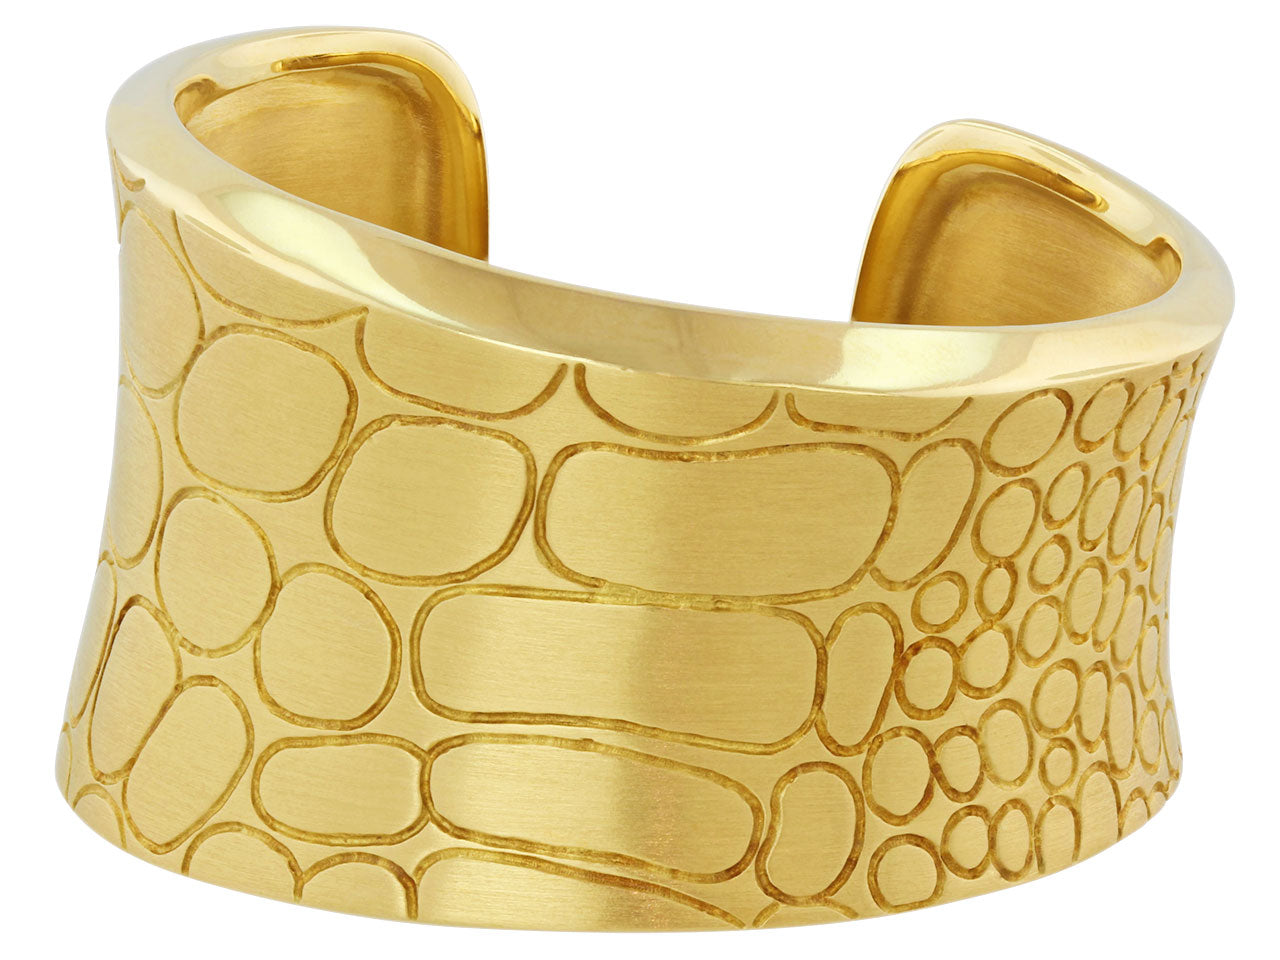 POMELLATO “Cocco” Cuff Bracelet in yellow gold